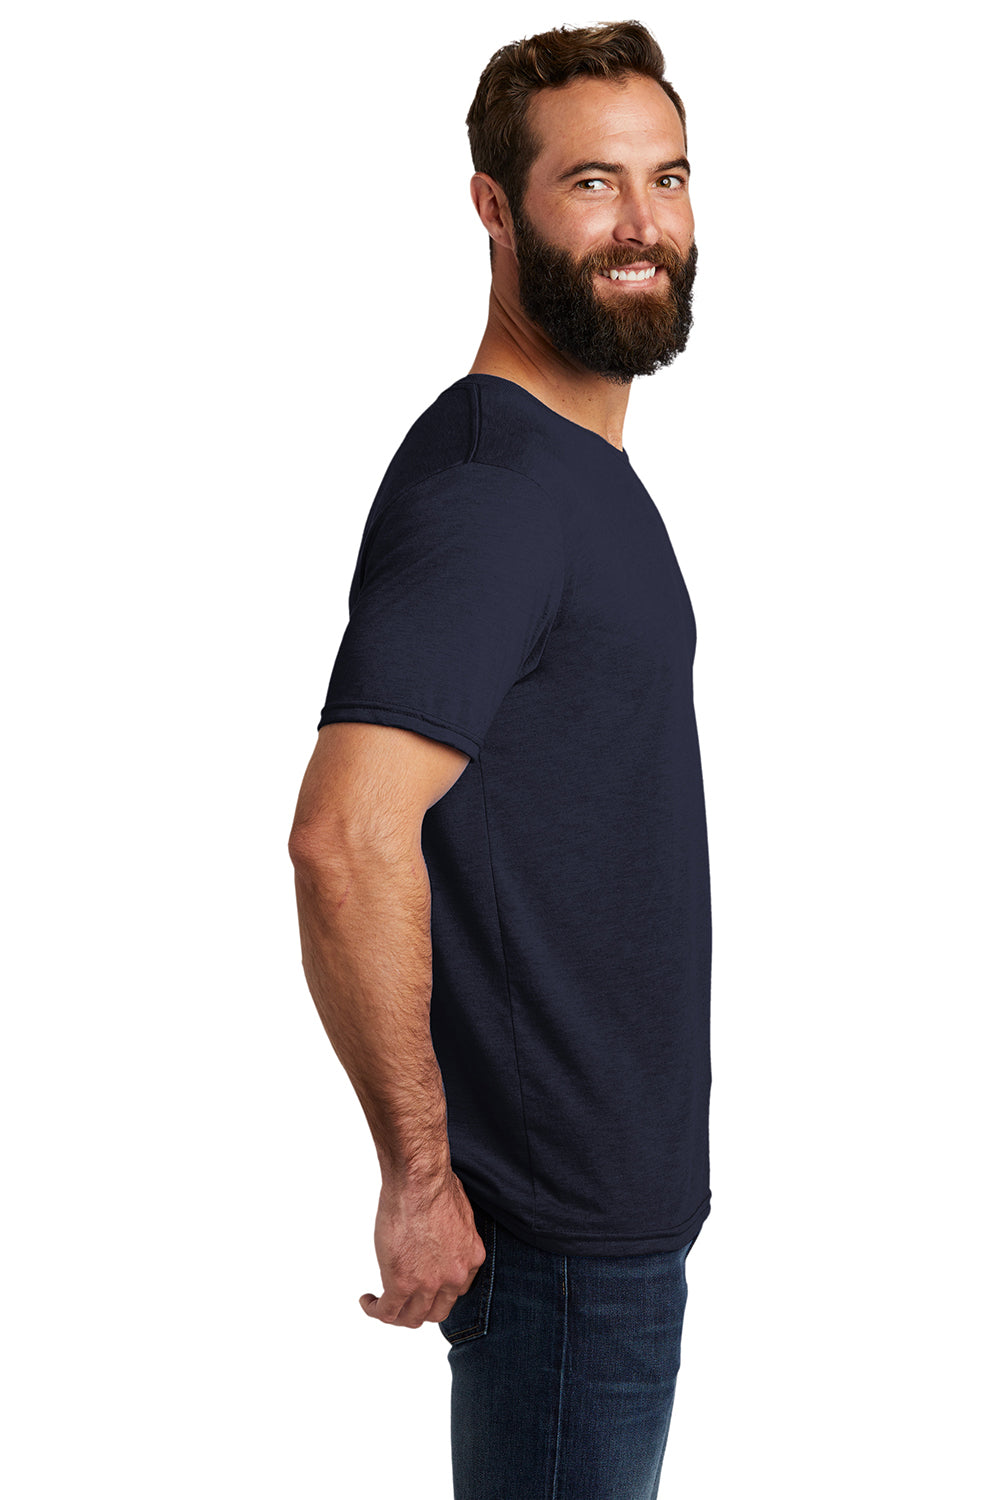 Allmade AL2004 Mens Short Sleeve Crewneck T-Shirt Night Sky Navy Blue Model Side